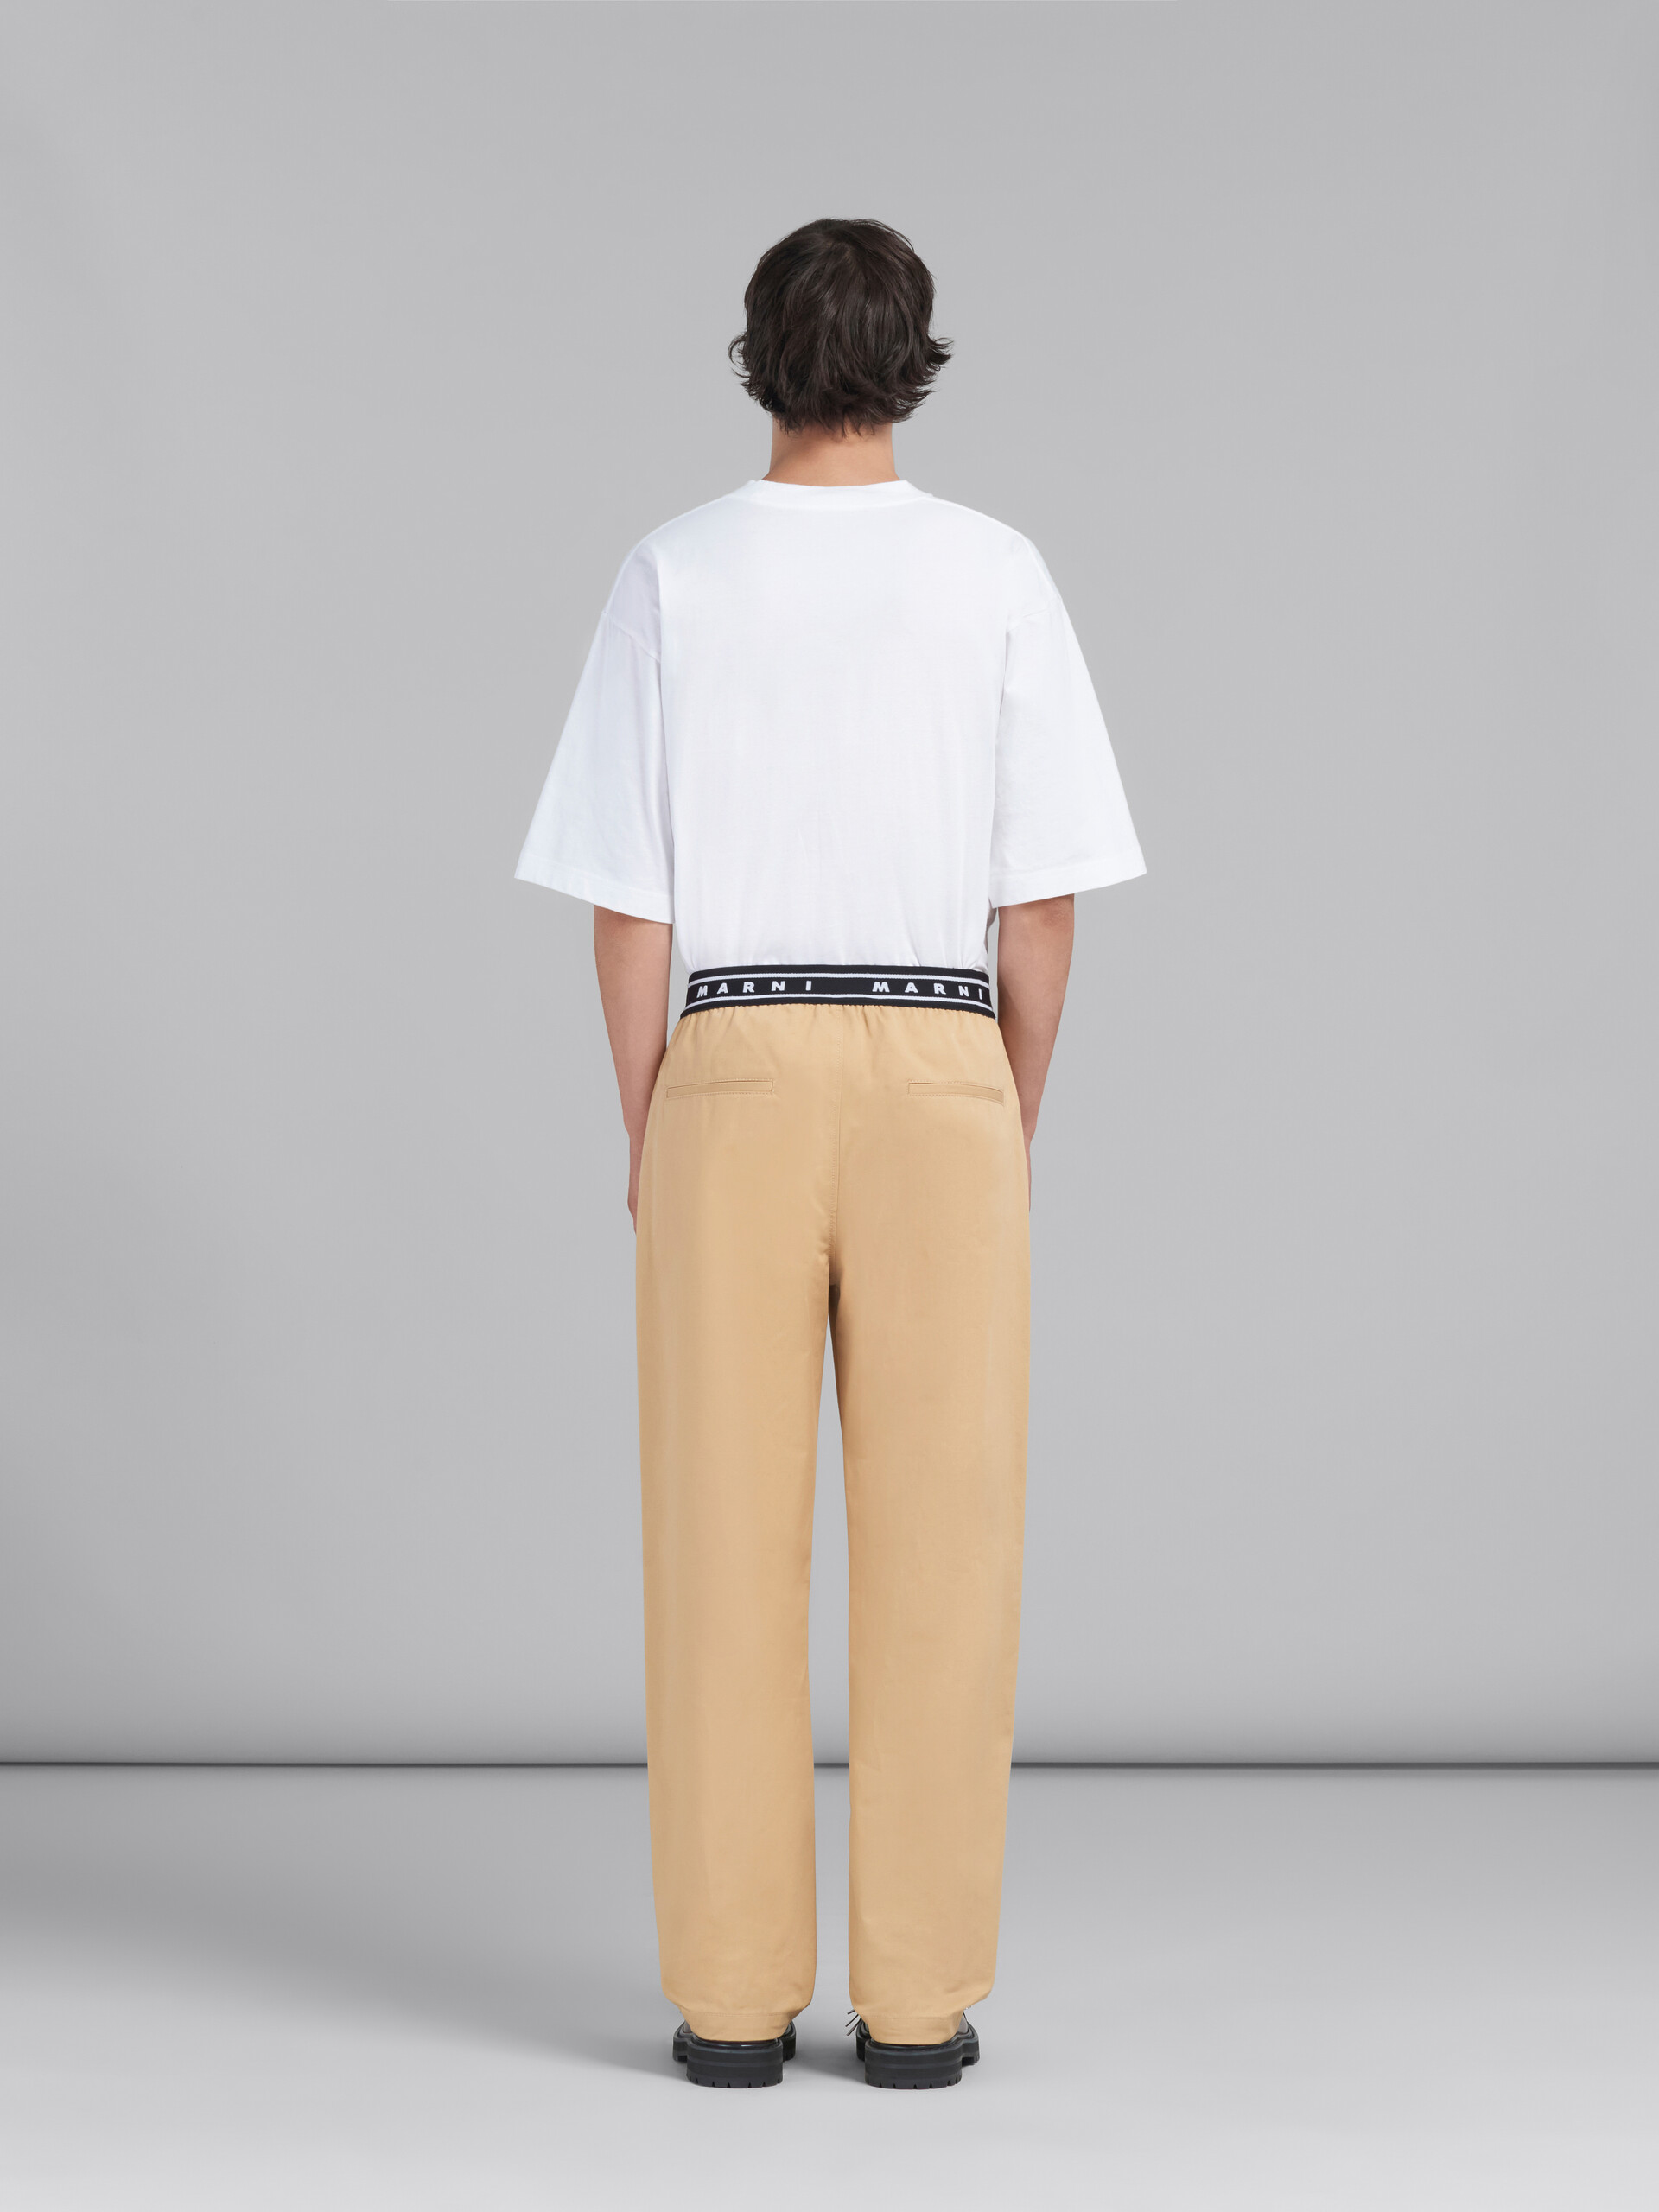 Pantalon en gabardine biologique bleue avec logo à l’arrière de la taille - Pantalons - Image 3